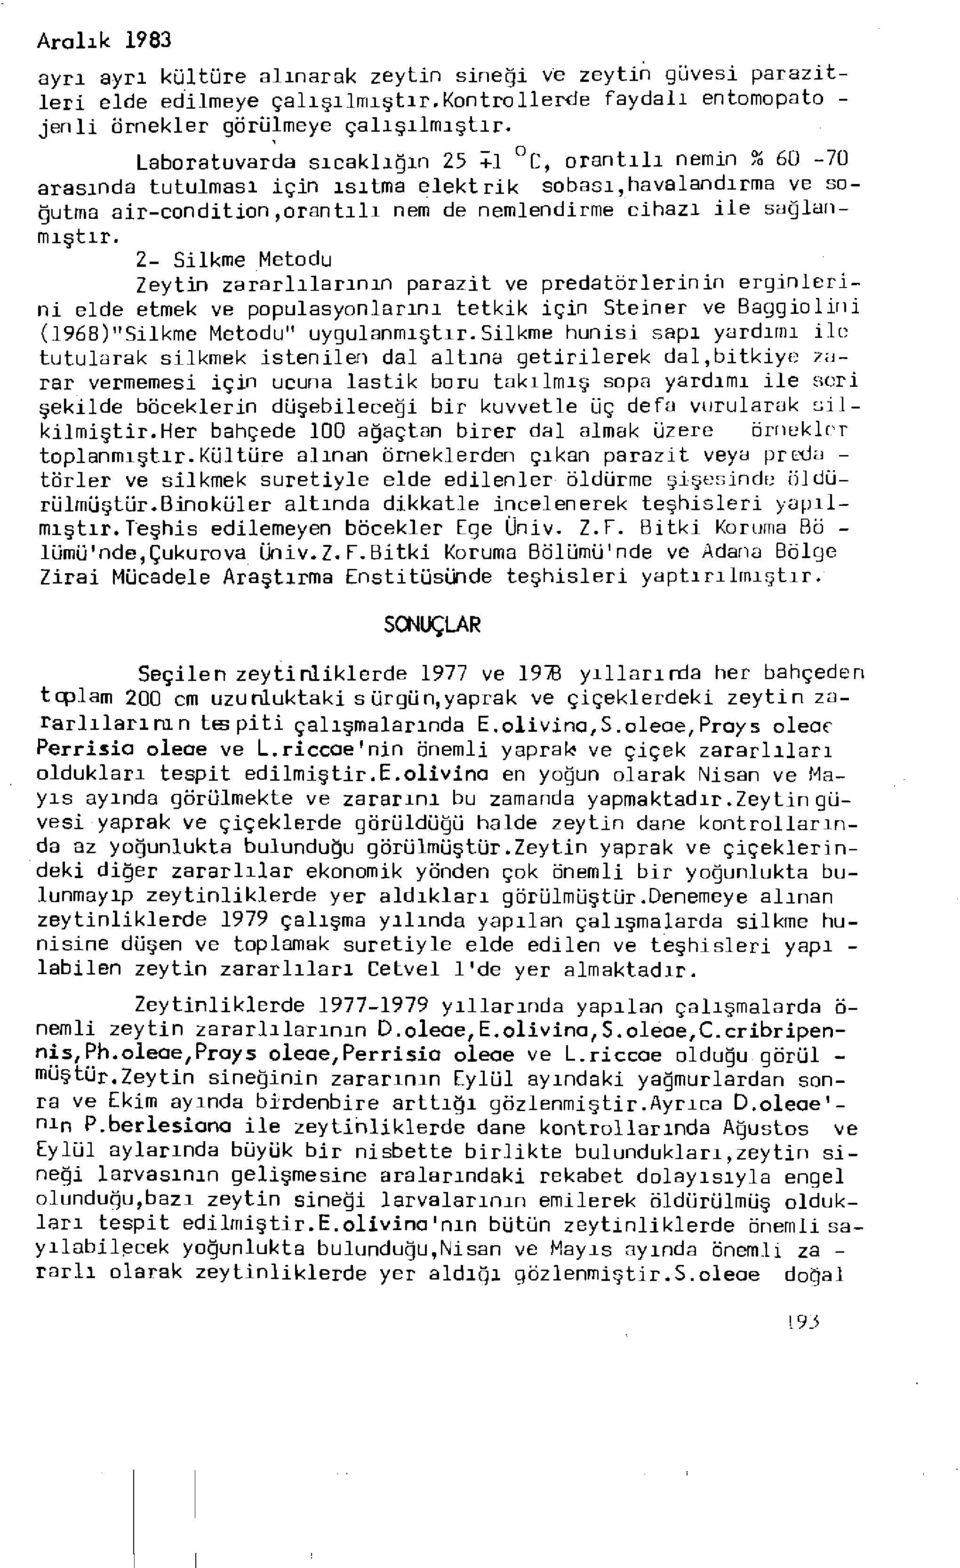 2- Silkme Metodu Zeytin zararlılarının parazit ve predatörlerinin erginlerini elde etmek ve populasyonlarını tetkik için Steiner ve Baggiolini (1968)"Silkme Metodu" uygulanmıştır.